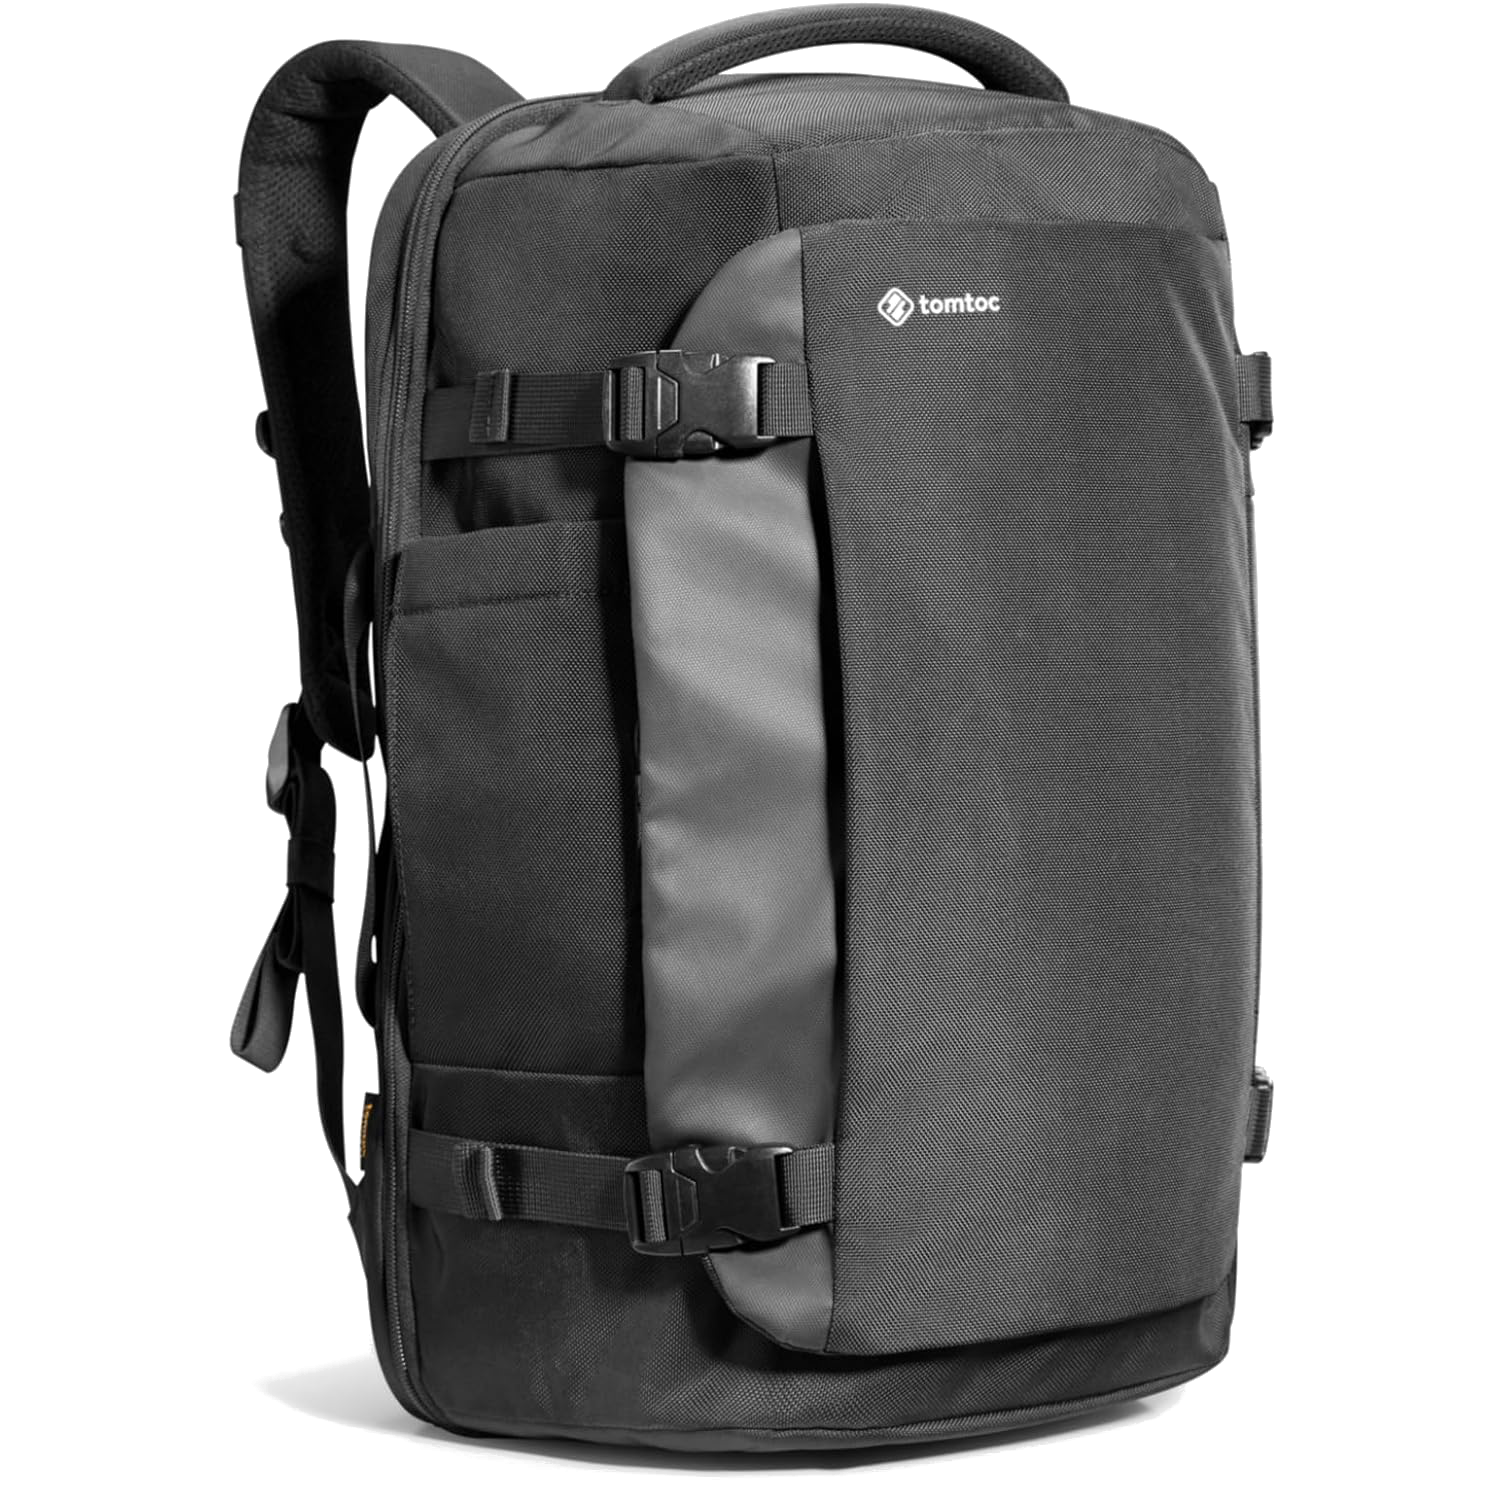 tomtoc-40l-travel-laptop-backpack-render-01